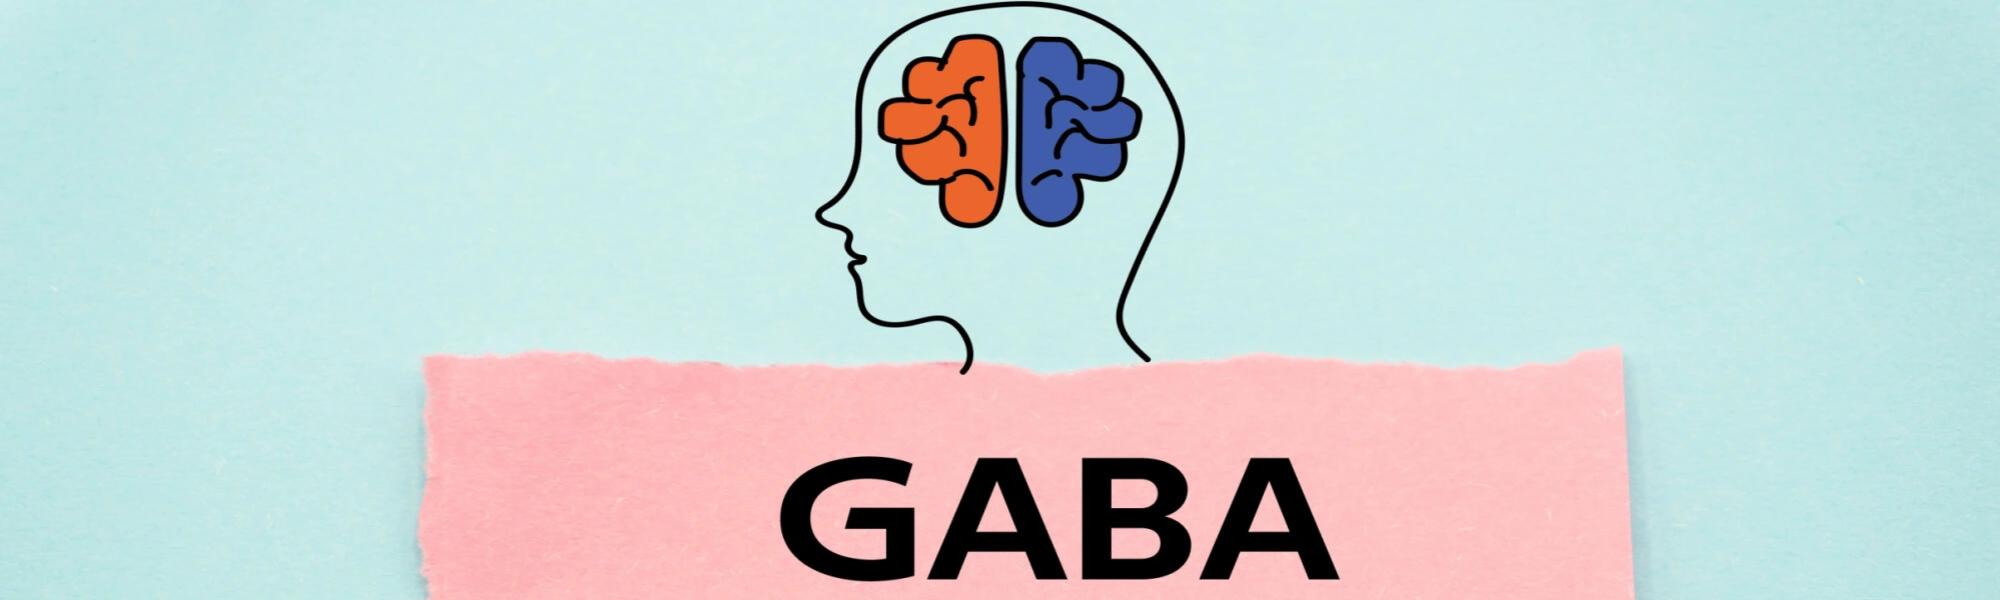 GABA (kwas gamma-aminomasłowy) - właściwości, niedobory, jak zwiększyć poziom najpotężniejszego neuroprzekaźnika?